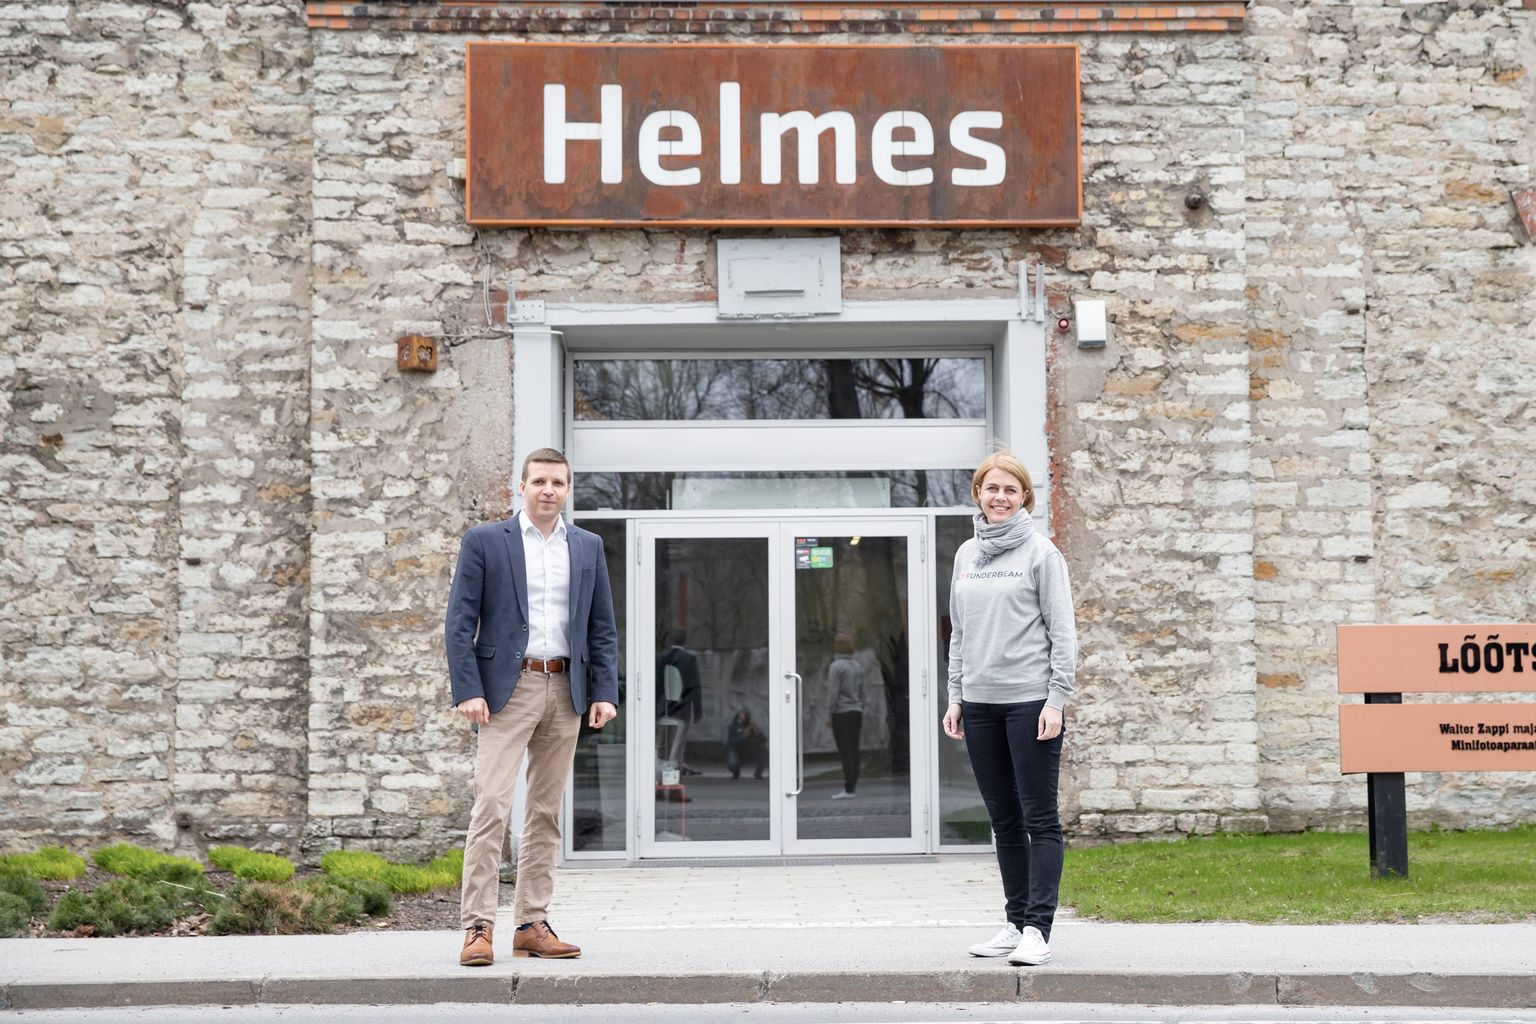 Helmese juhatuse liige Andres Kaljo ja Funderbeami asutaja Kaidi Ruusalepp lõid käed, et teha Helmes oma aktsionäride siseringile kaubeldavaks.